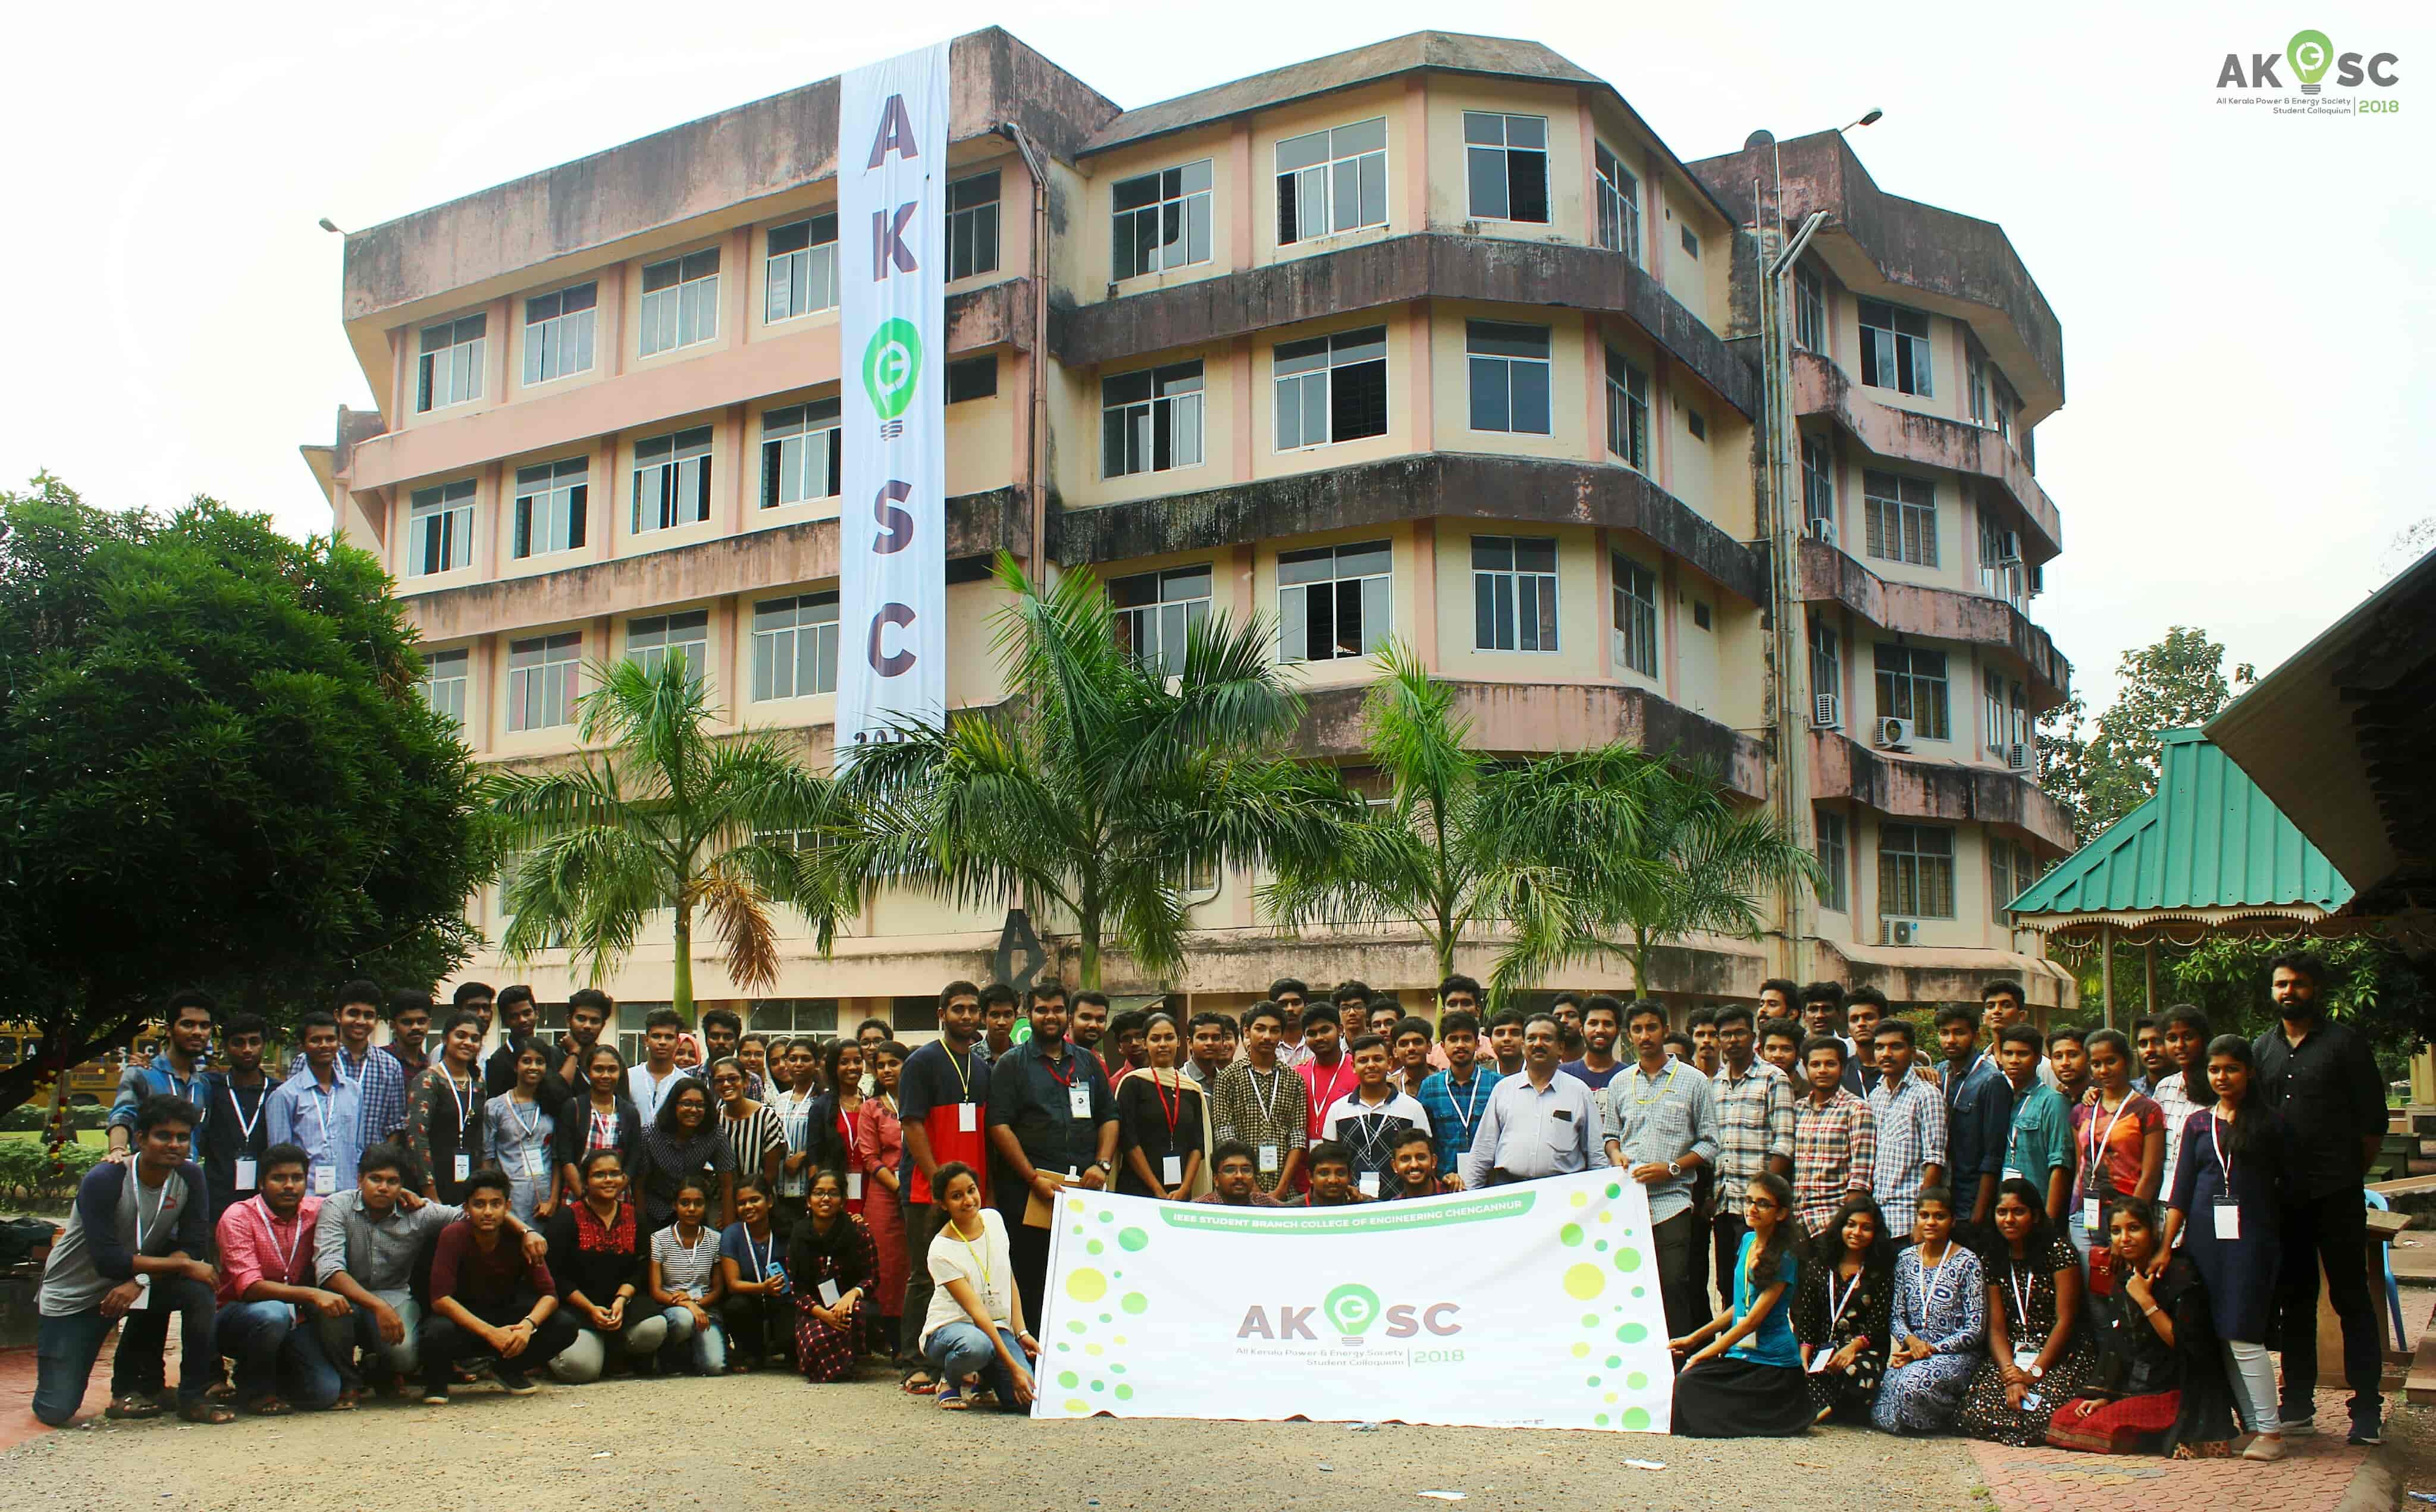 AKPSC IEEE